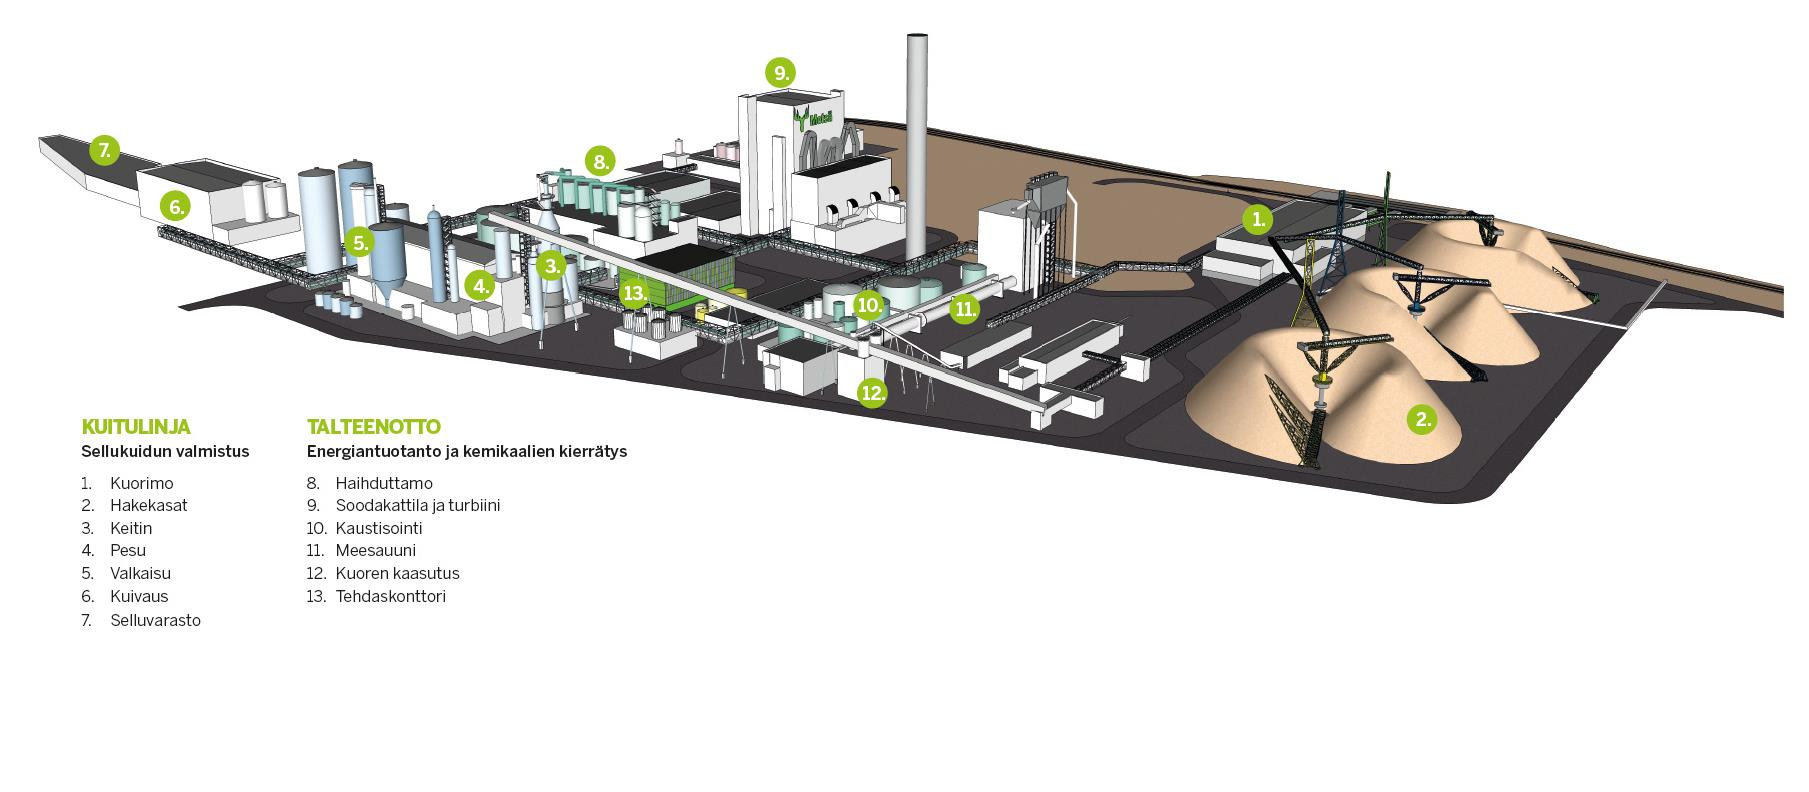 Äänekosken biotuotetehdas Äänekosken uuden sukupolven energiatehokas sellutehdas toimii biotuotetehtaan ytimenä.